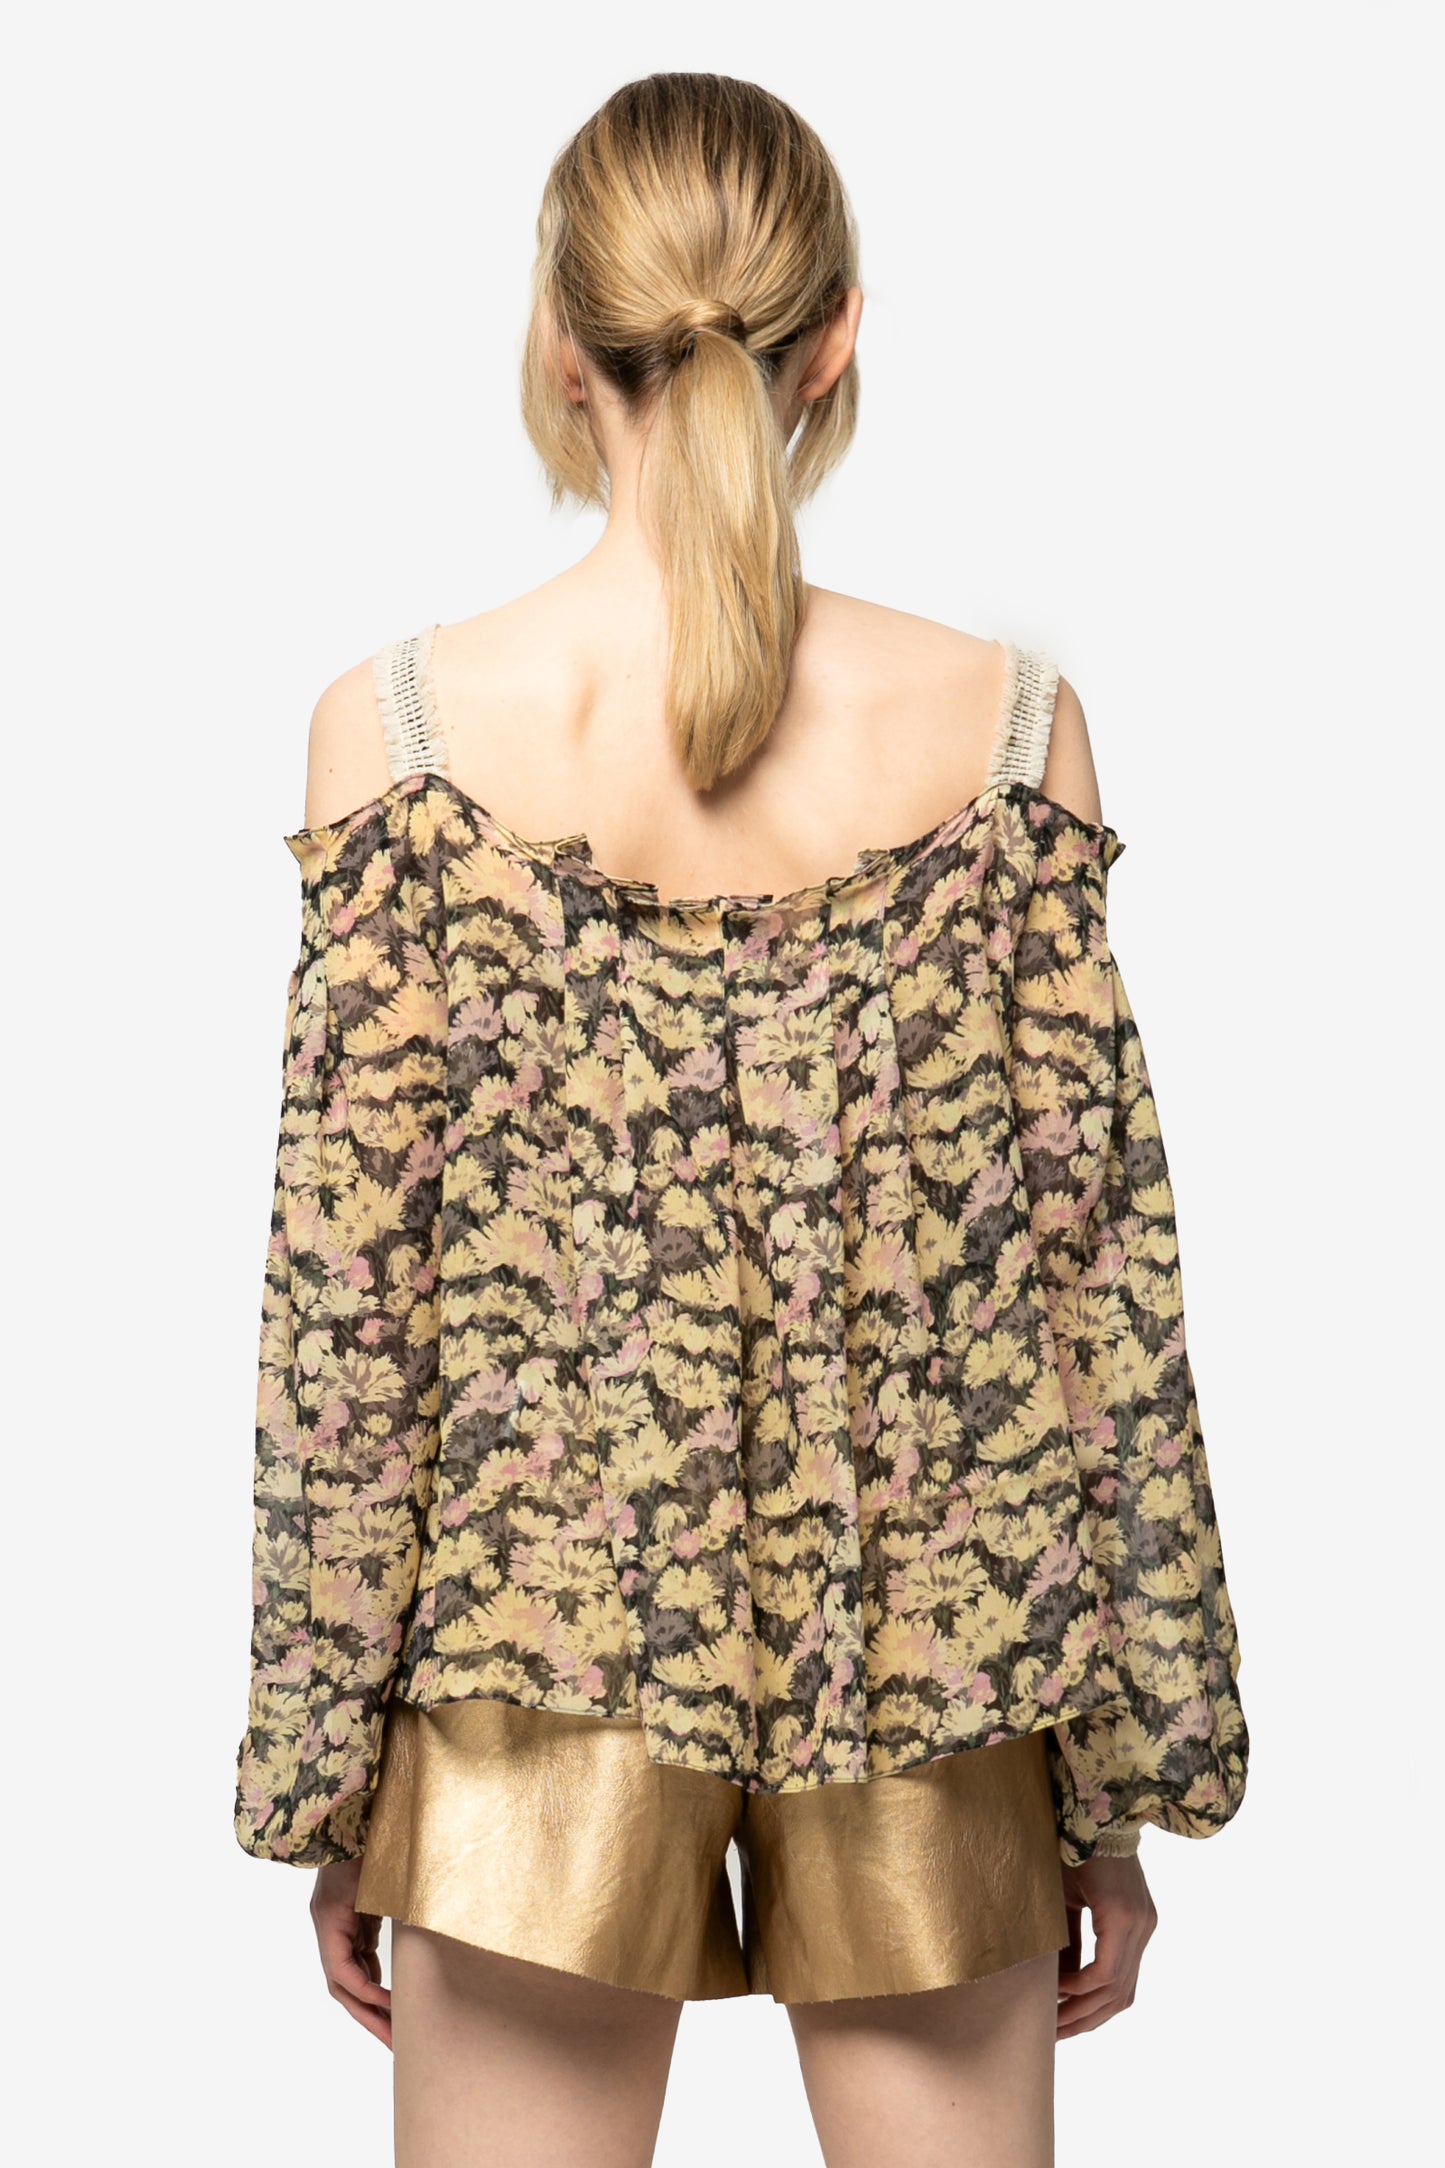 ANNIE - Foliage Off the shoulder blouse